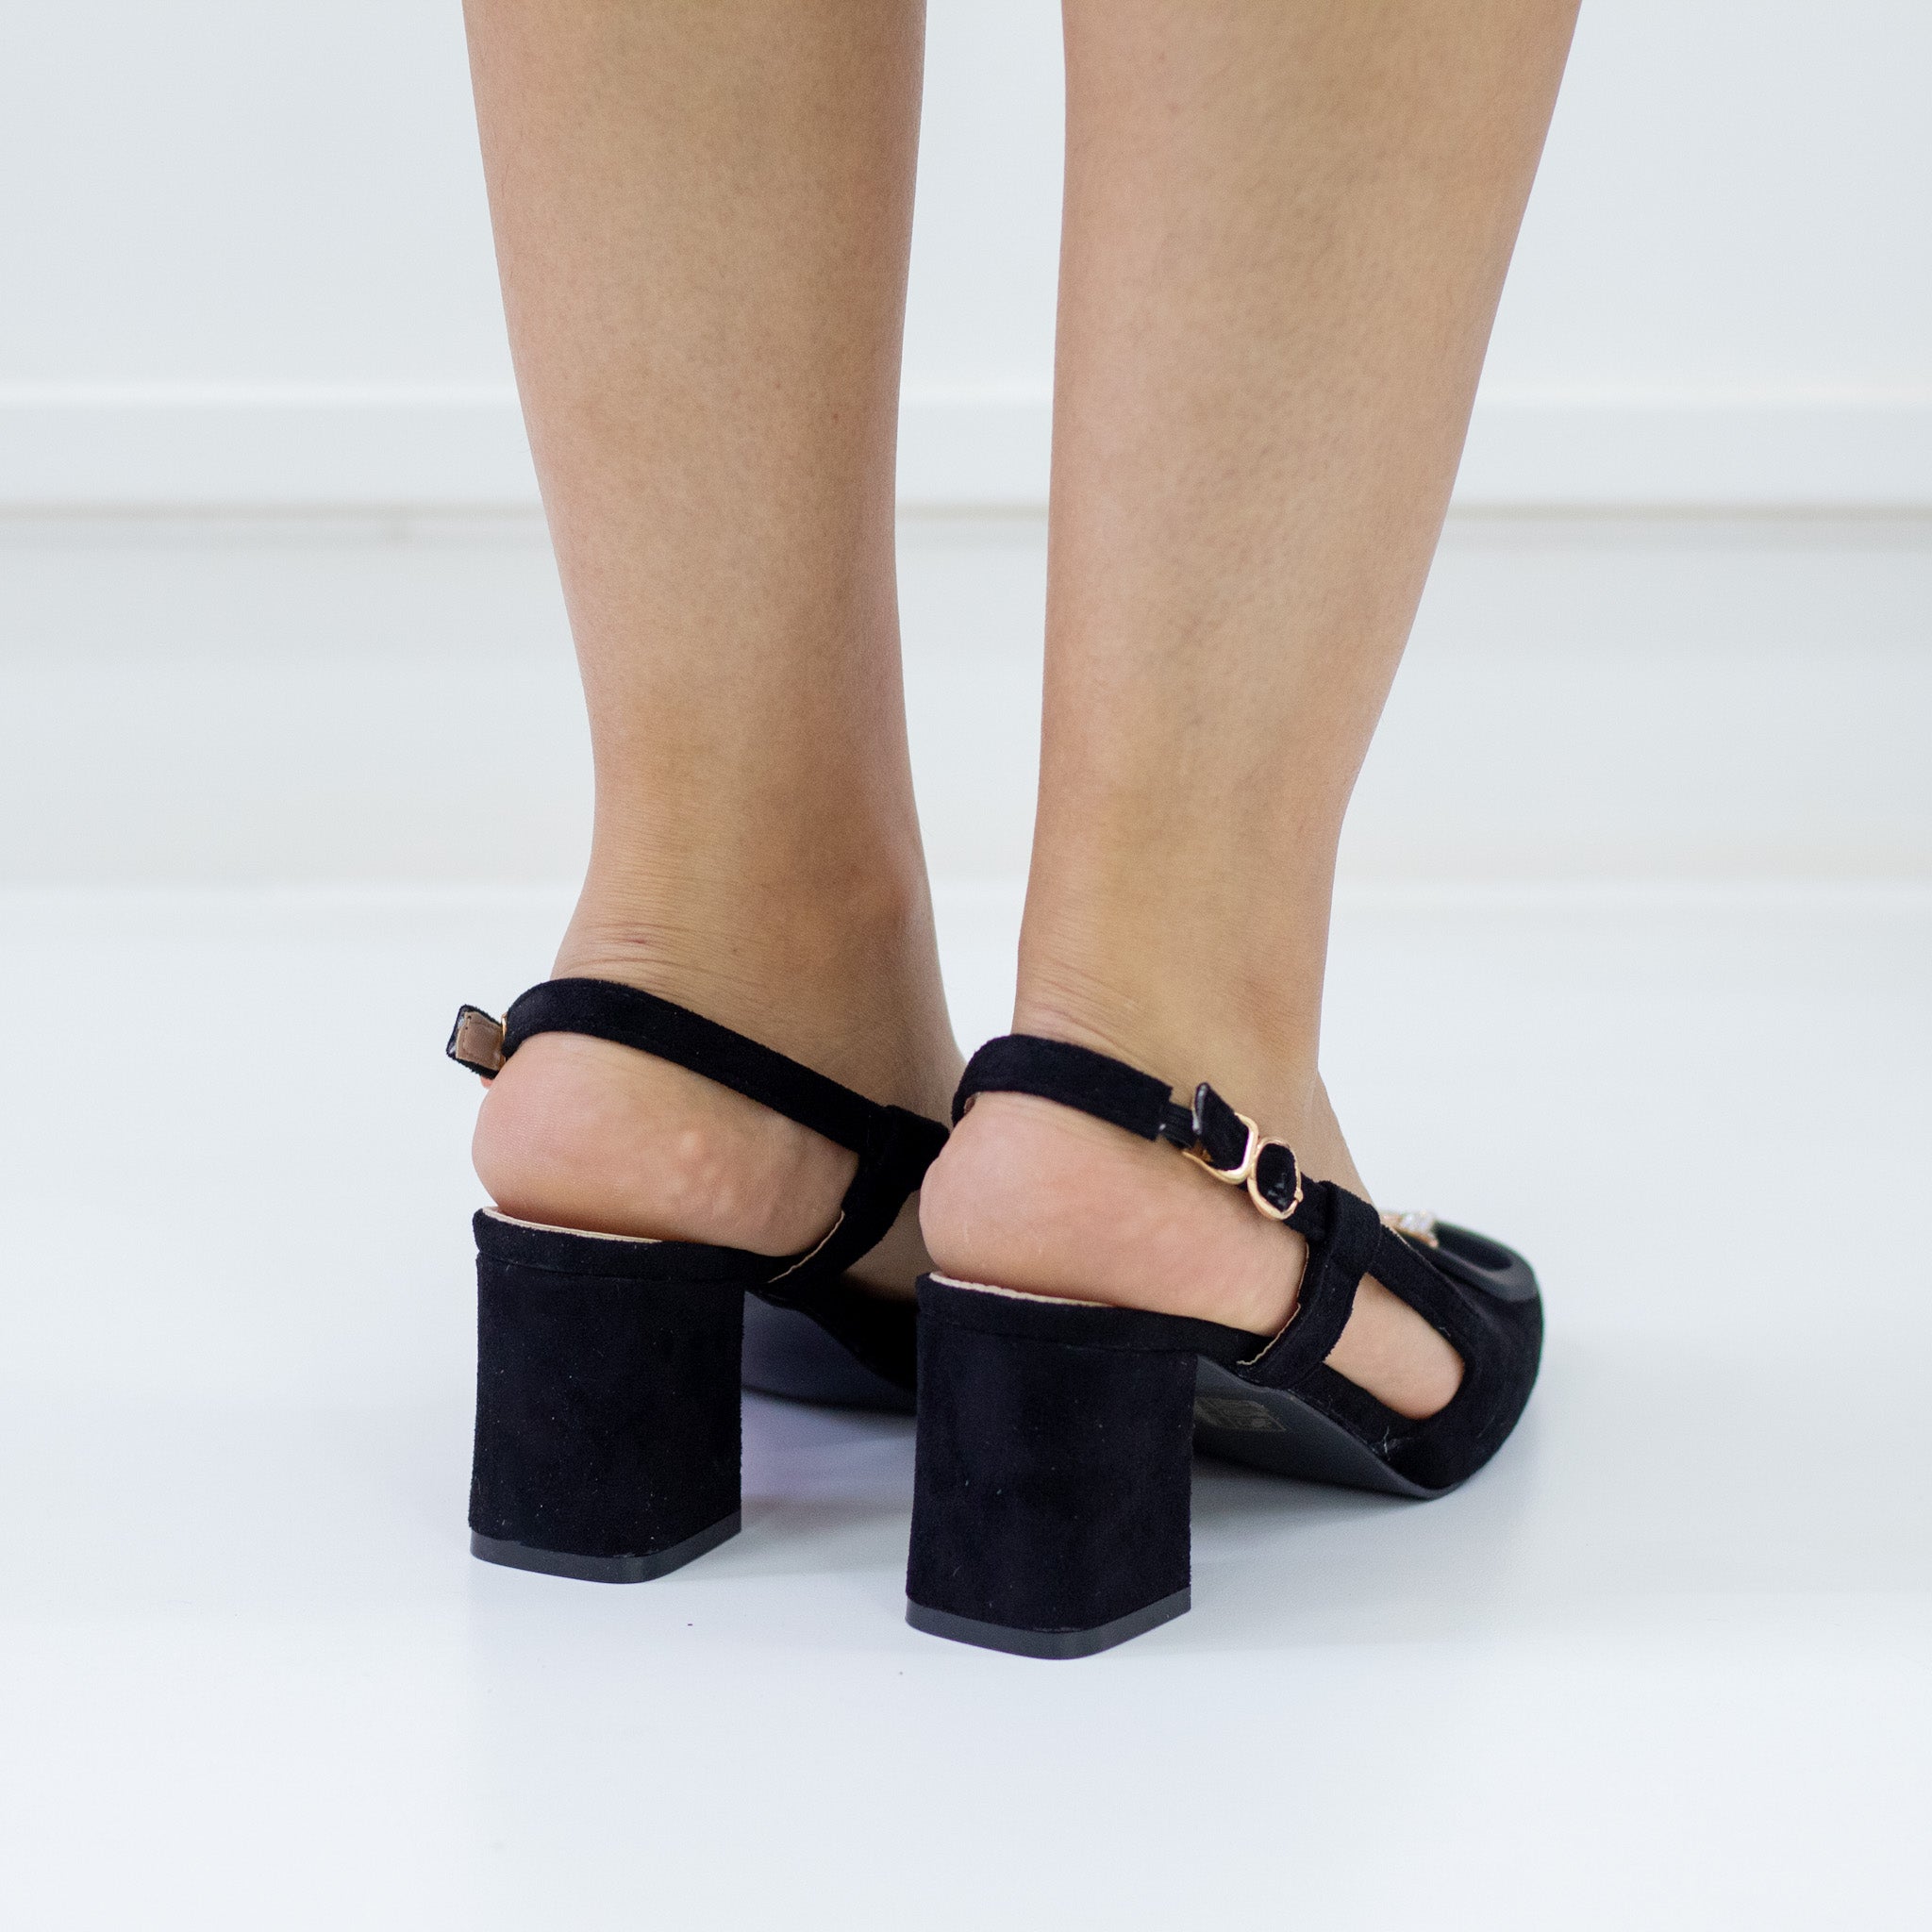 Black 6cm heel suide sling back with a gold trim olsen